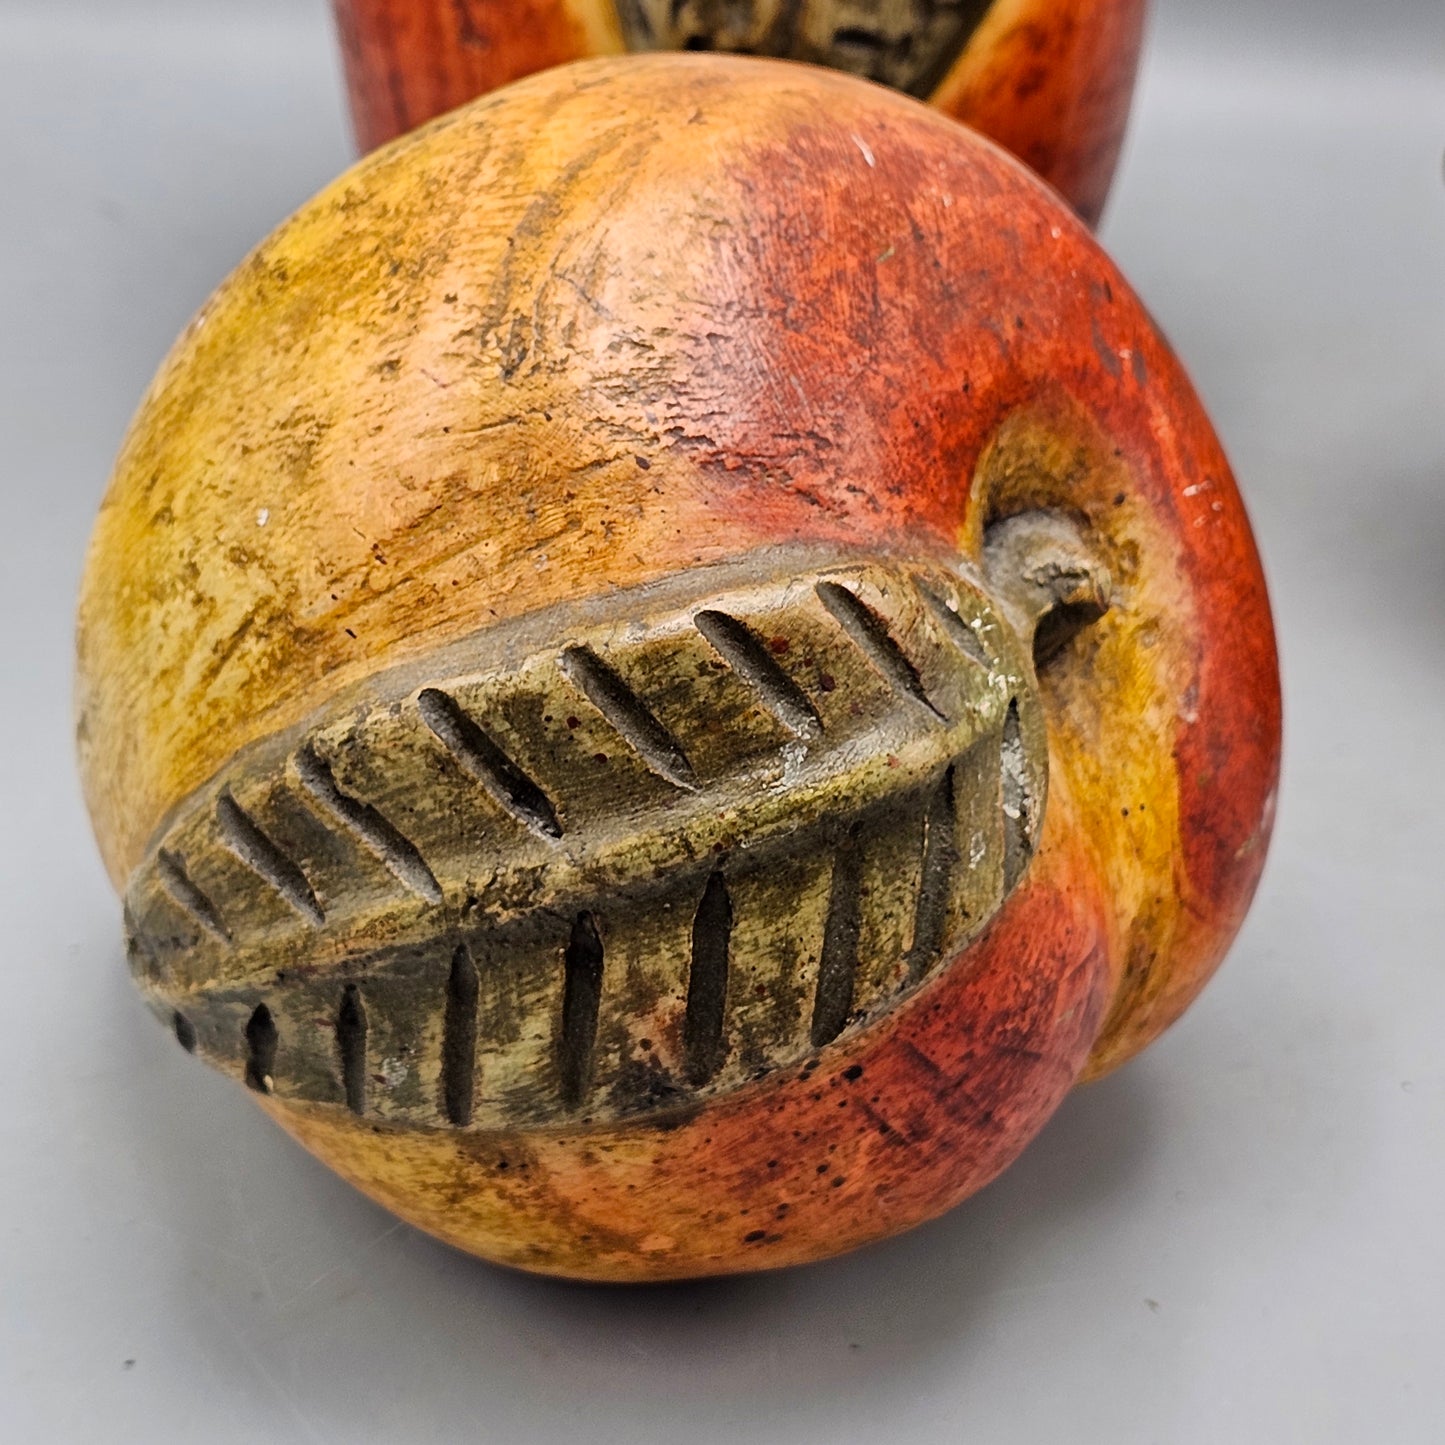 Set of 3 Vintage Ceramic Oversize Fruit